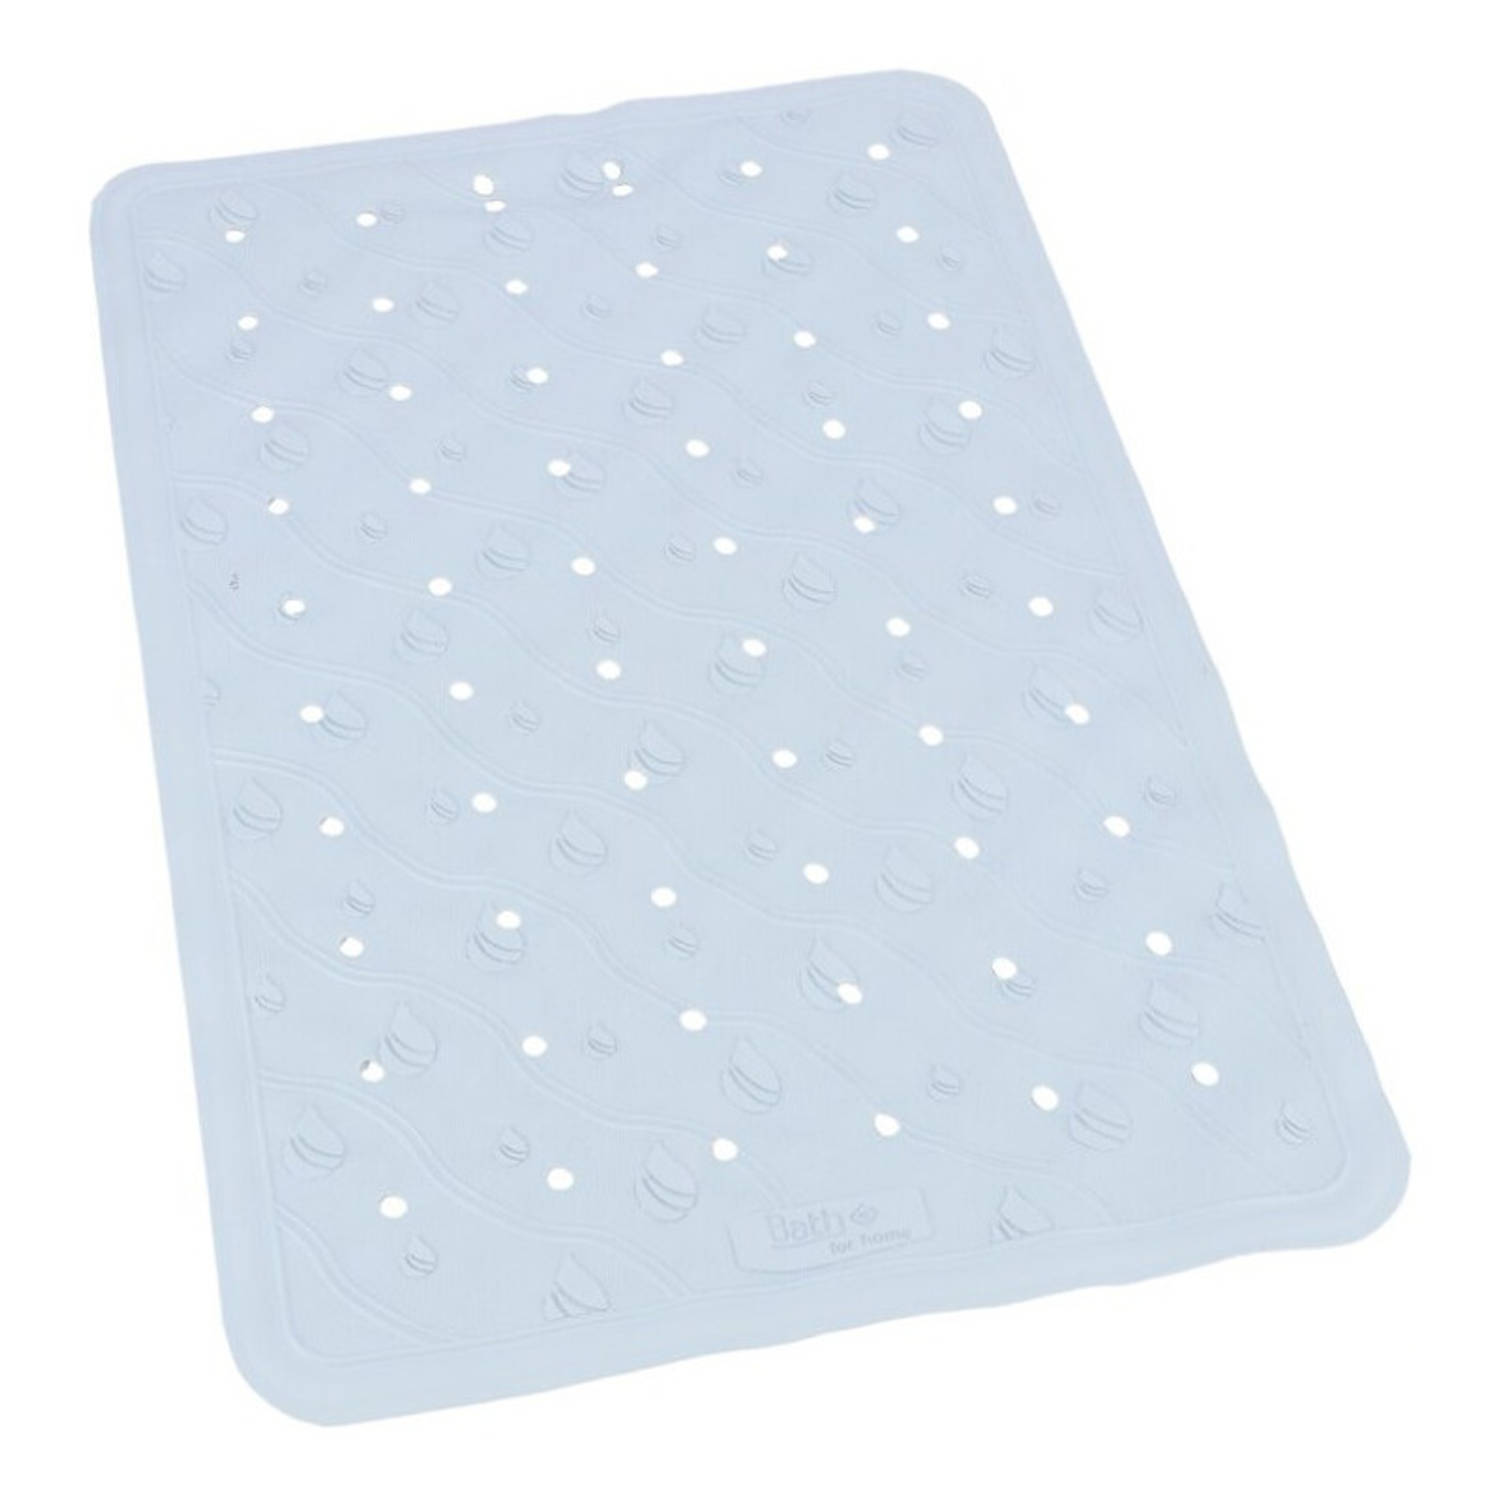 Lichtblauwe Anti-slip Badmat 36 X 57 Cm Rechthoekig Badkuip Mat Grip Mat Voor In Douche Of Bad